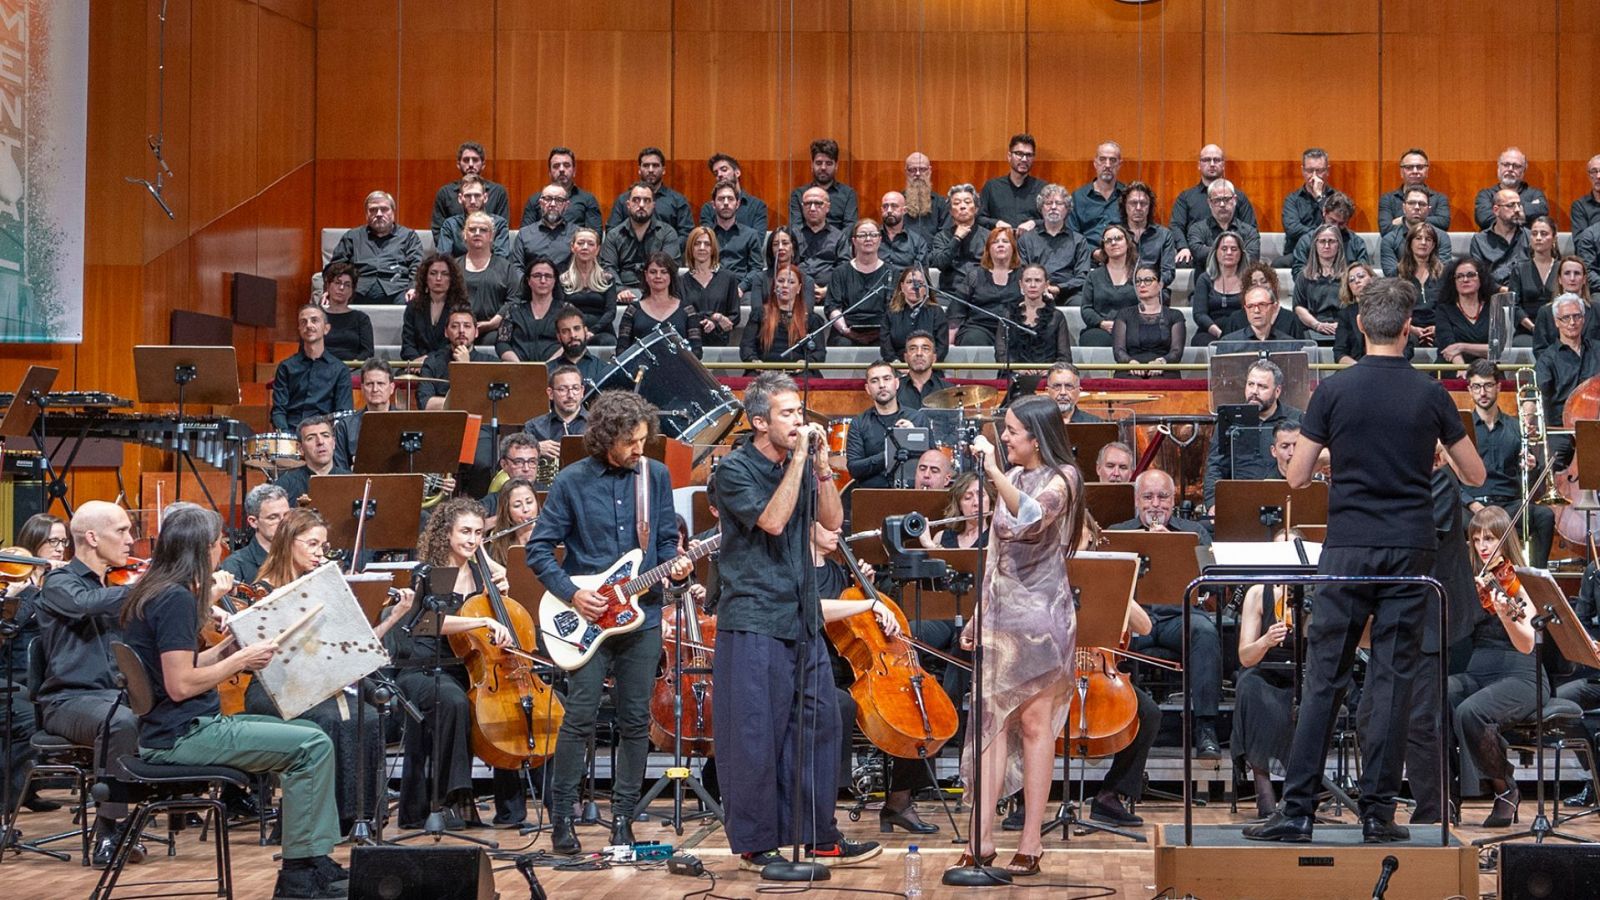 Vetusta Morla y Valeria Castro interpretan "Copenhague" junto a la Orquesta Sinfónica y Coro RTVE.